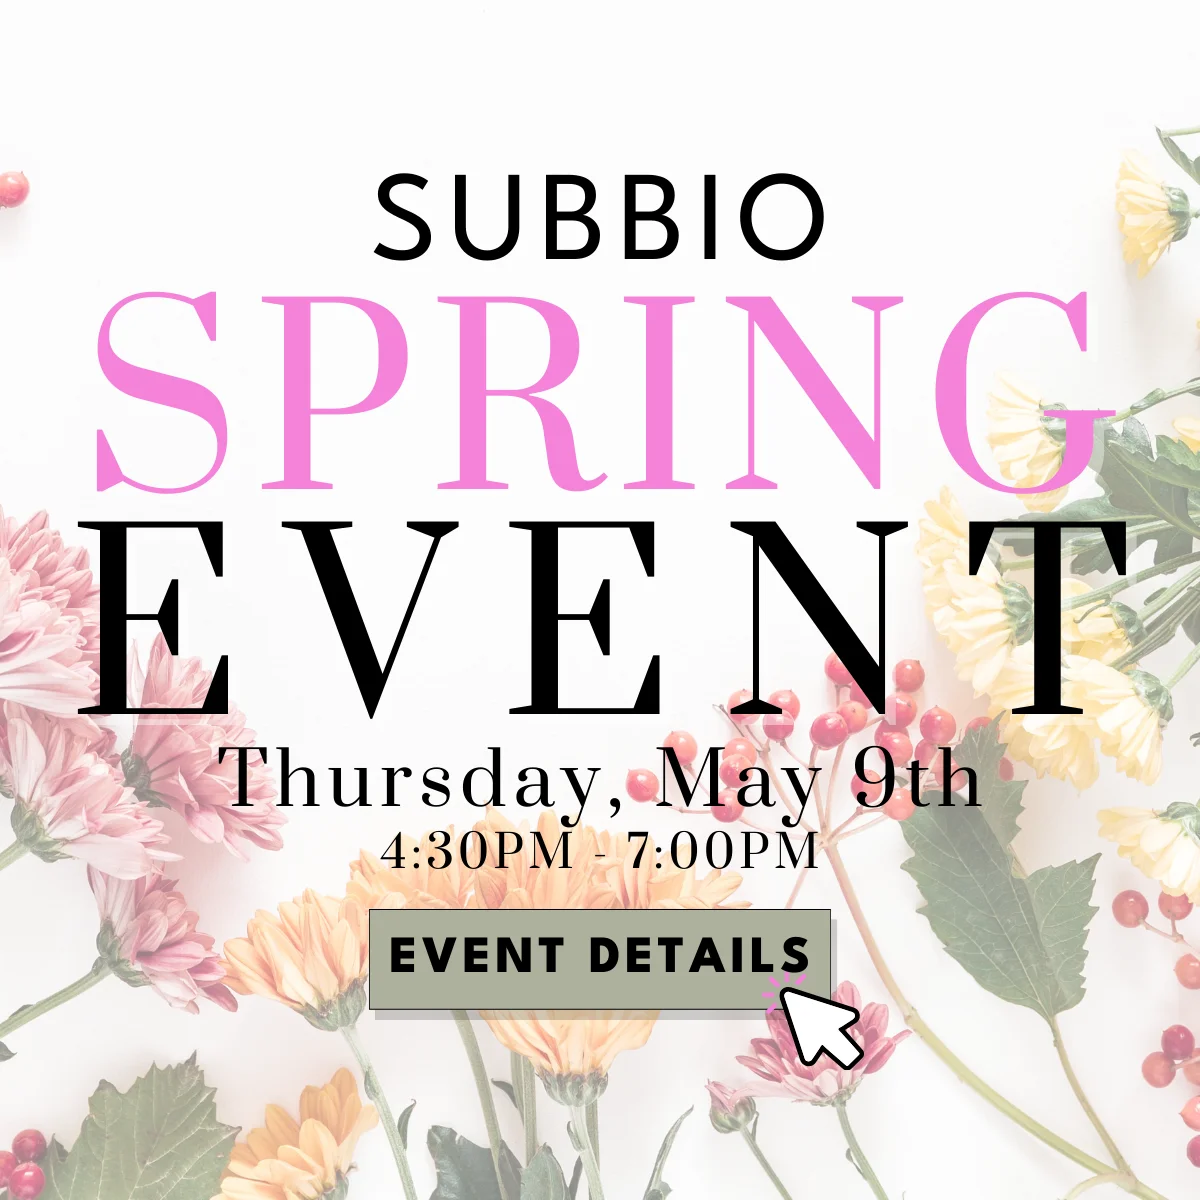 Subbio Spring Event